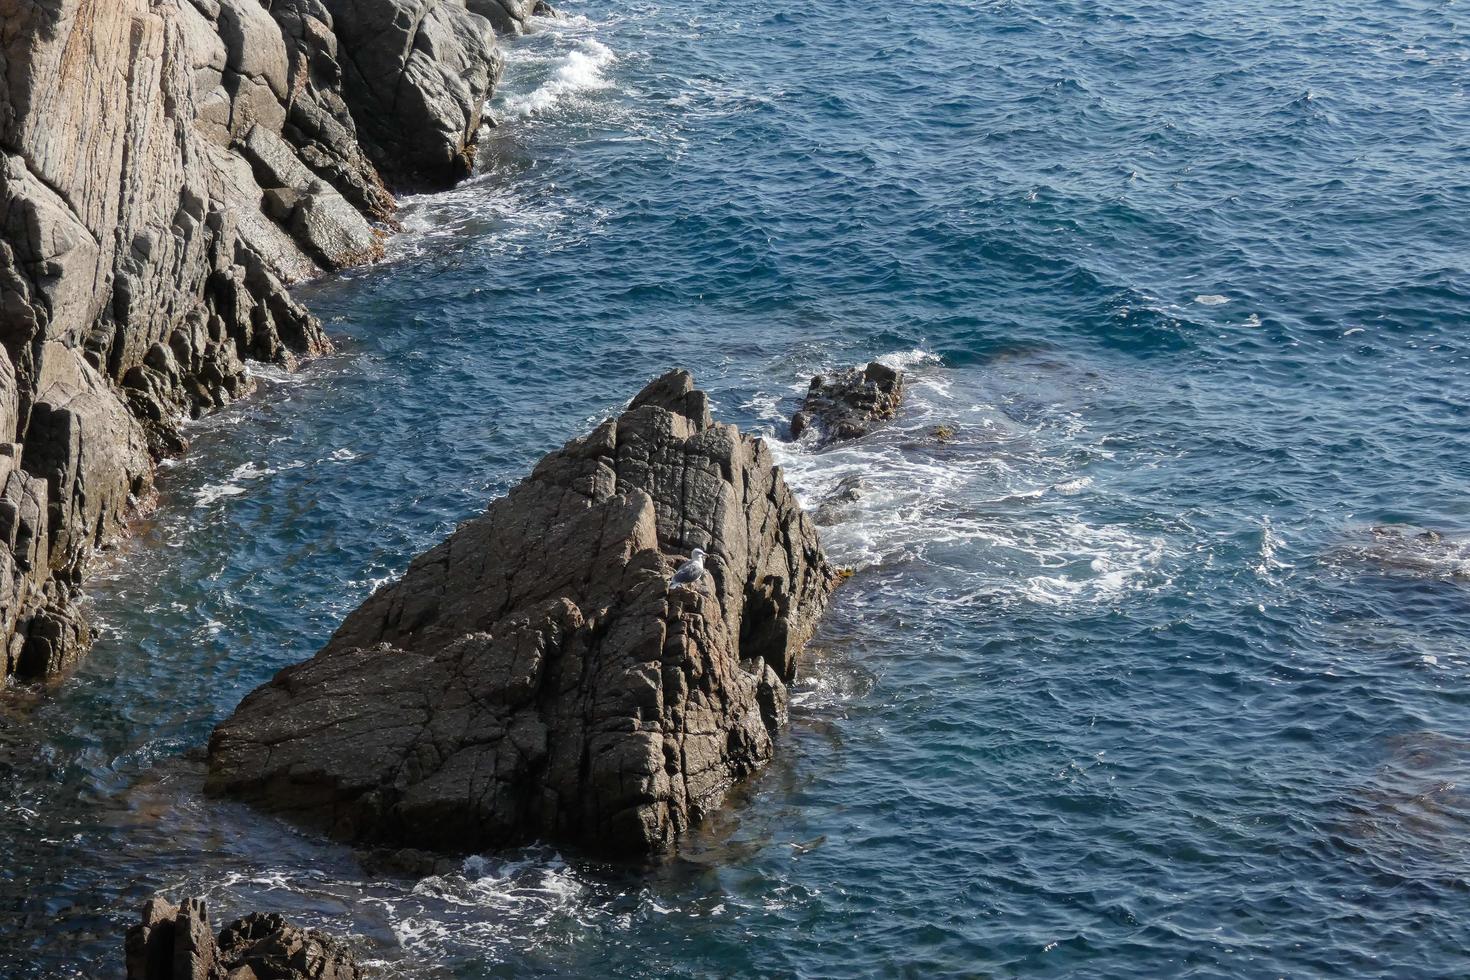 rochers et mer sur la costa brava catalane, mer méditerranée, mer bleue photo